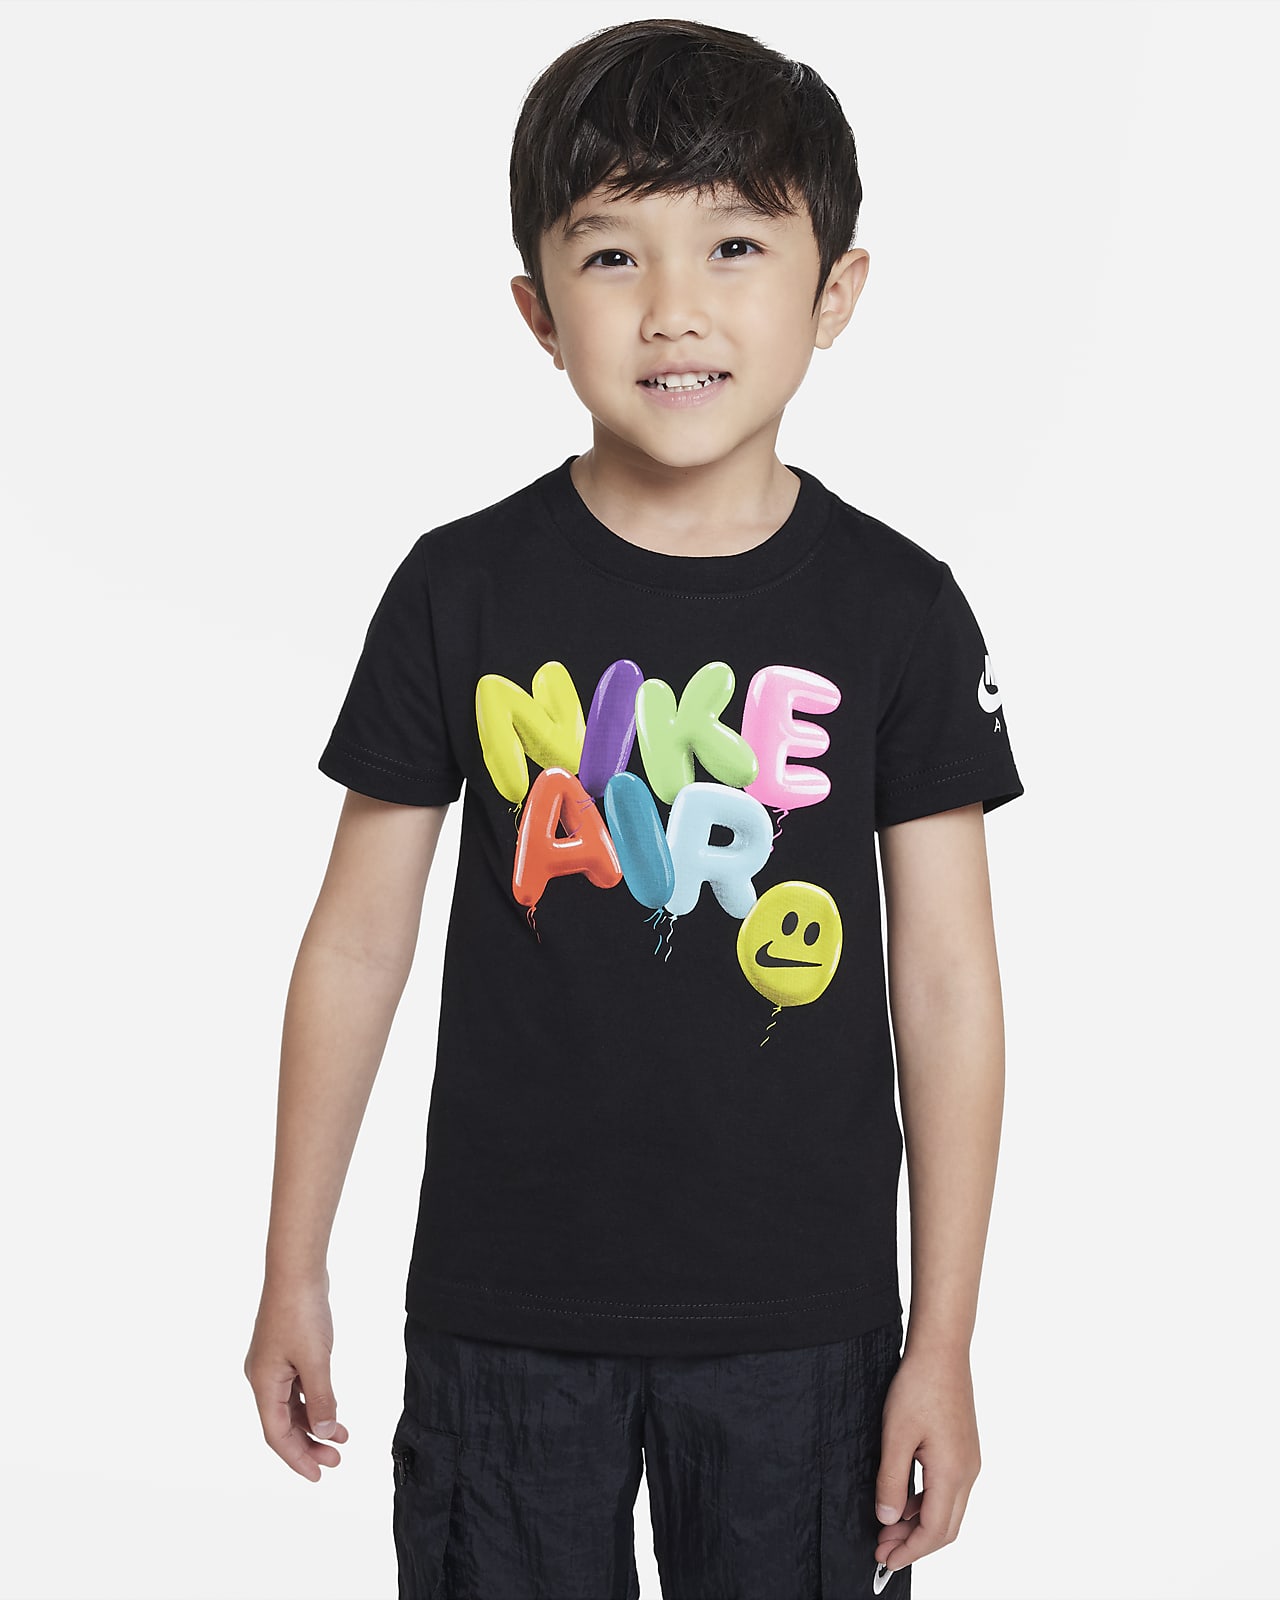 Nike Air Balloon Tee-T-shirt til mindre børn